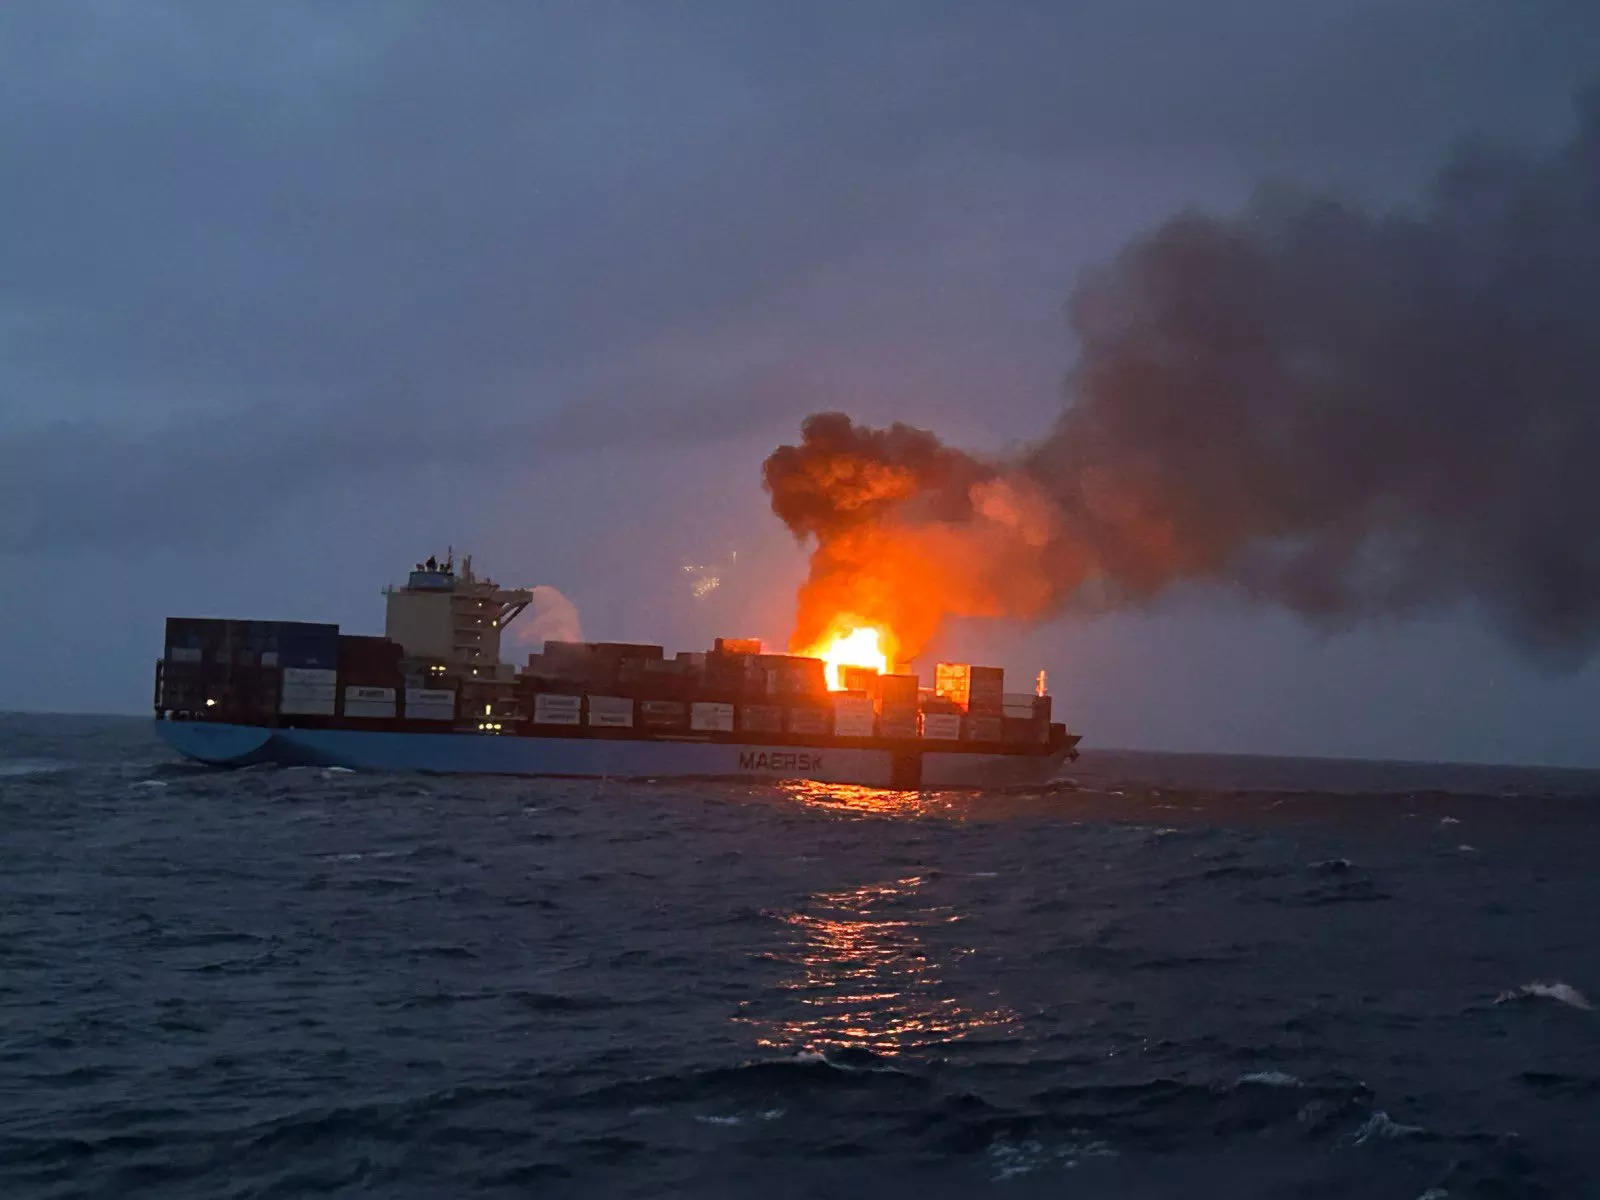 Indian coast guard ships battle fire aboard vessel in Arabian sea 